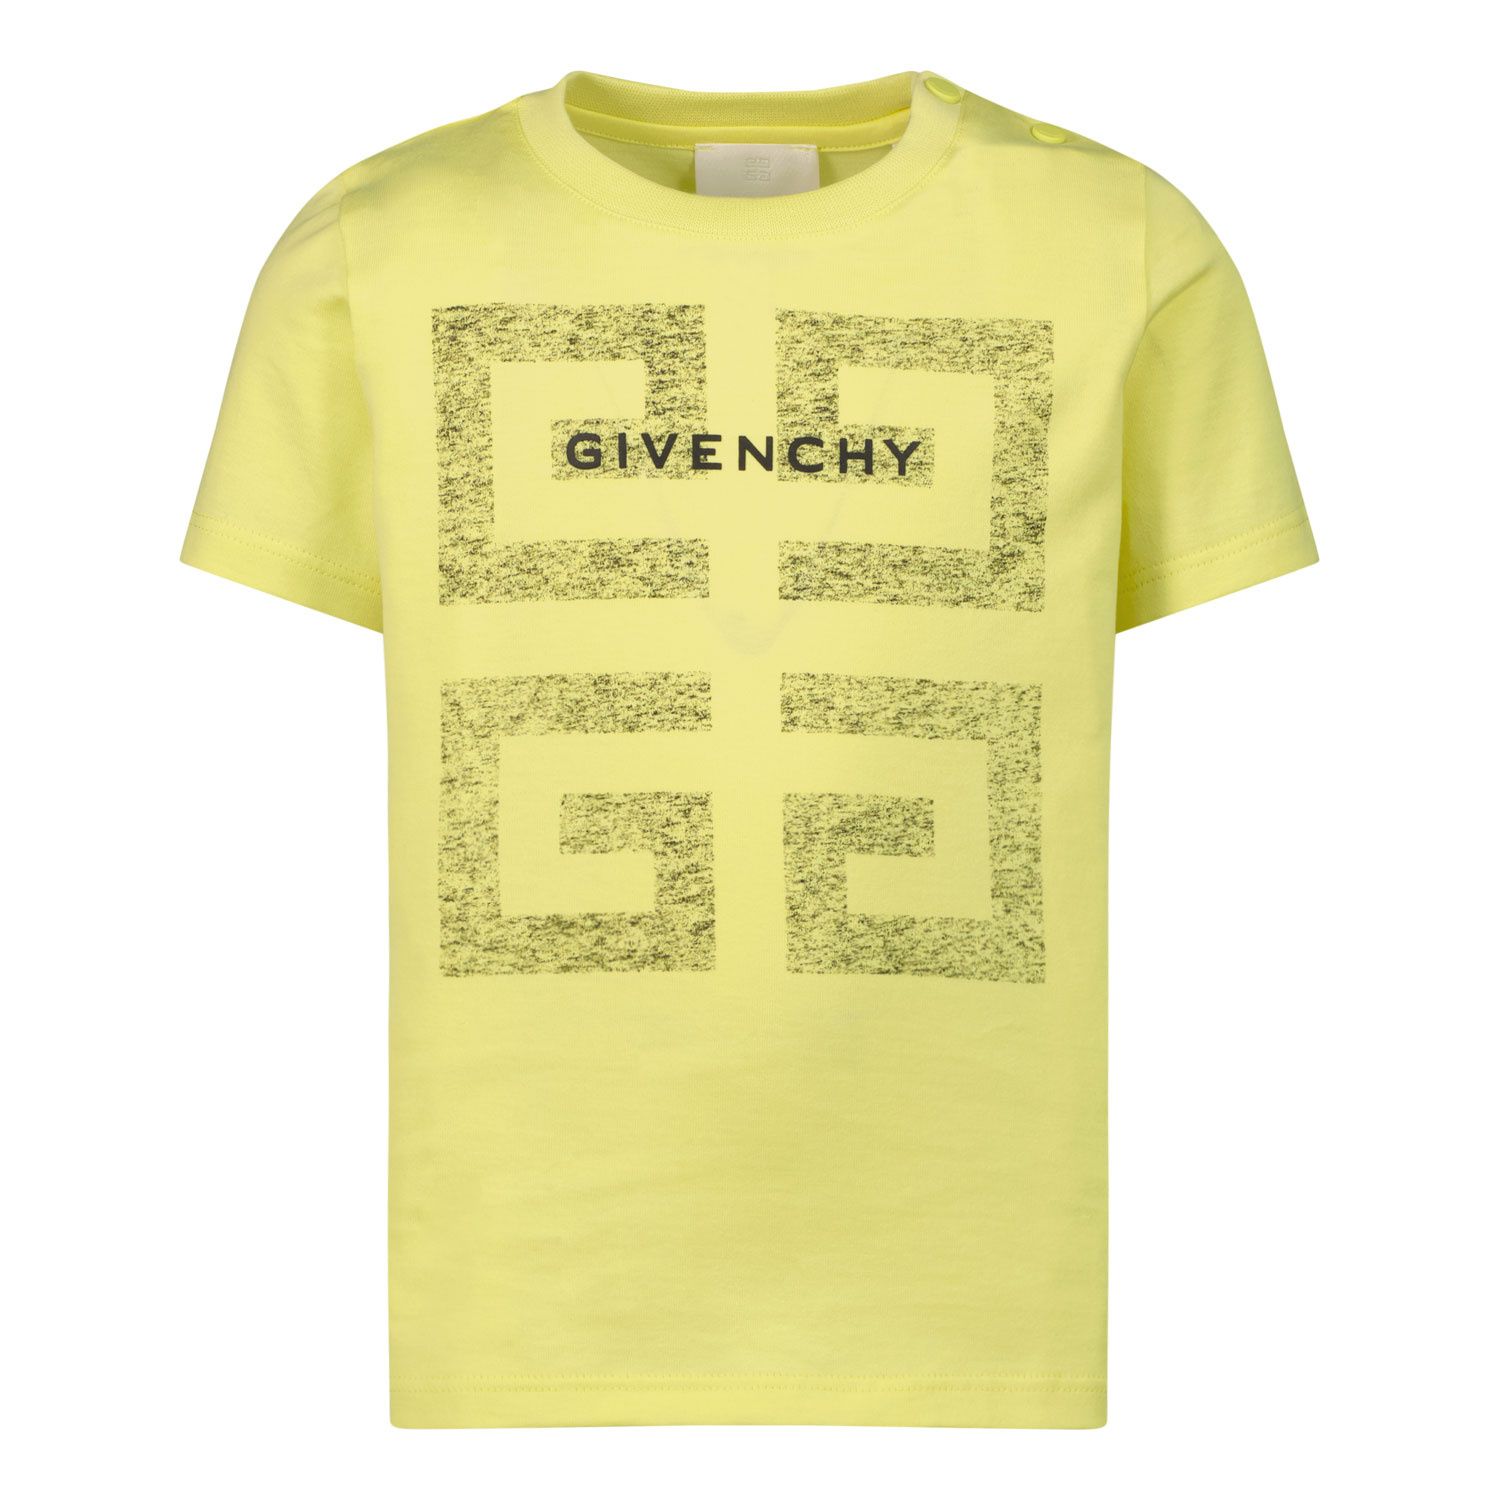 Bild von Givenchy H05205 Baby-T-Shirt Limette